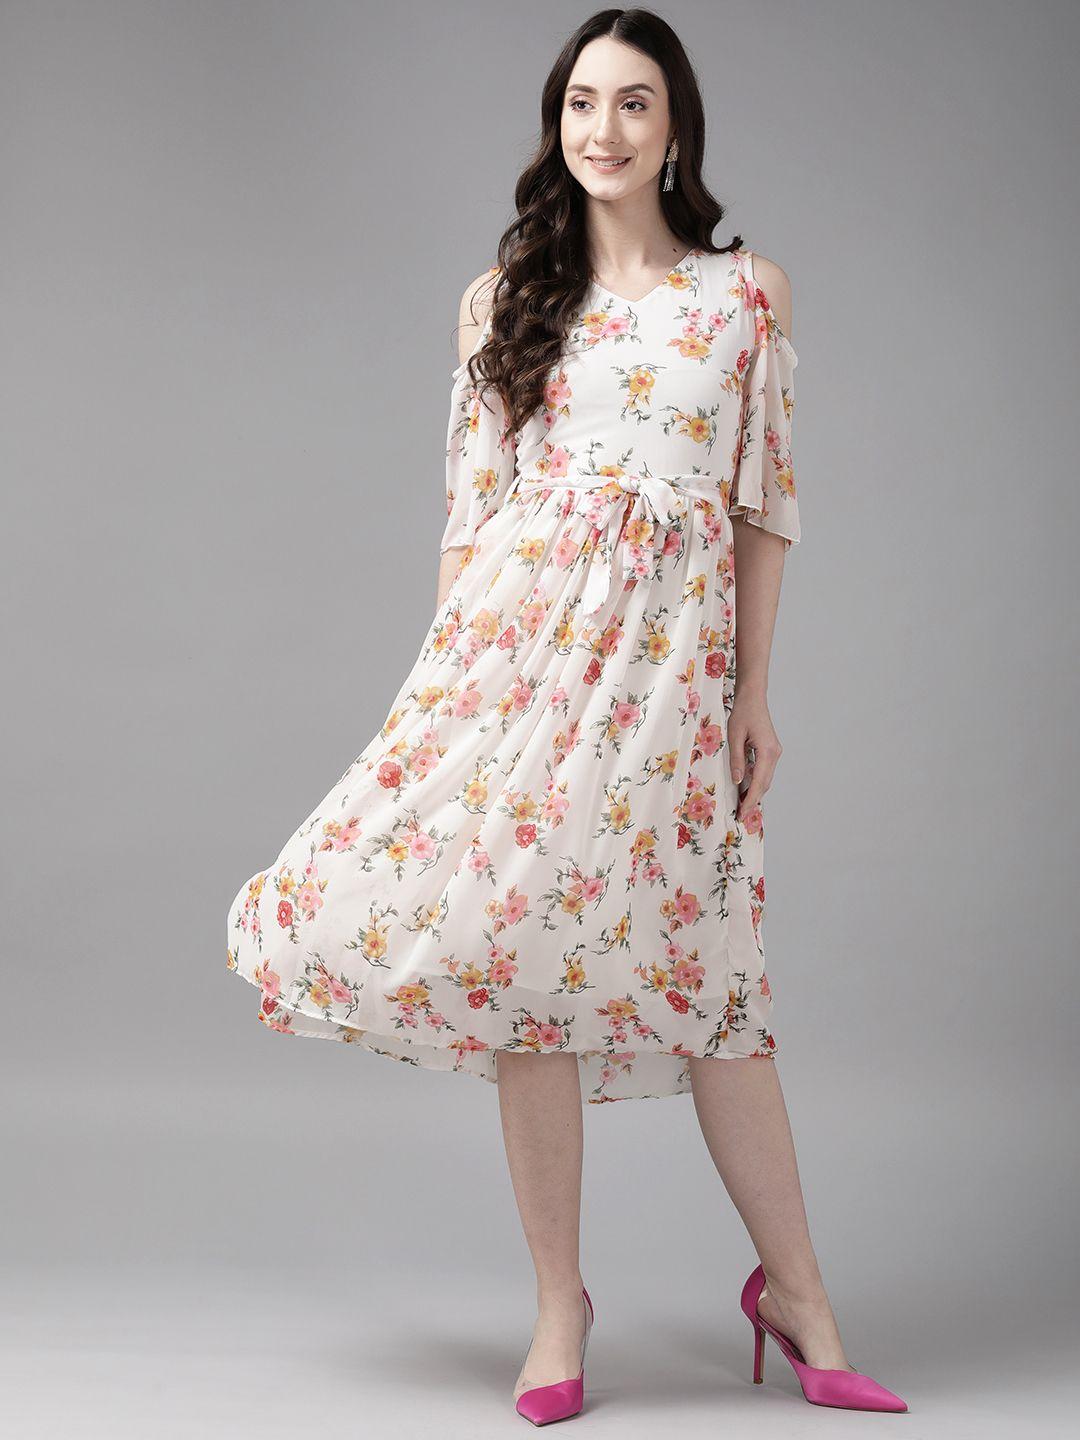 aarika floral cold-shoulder sleeves georgette a-line midi dress